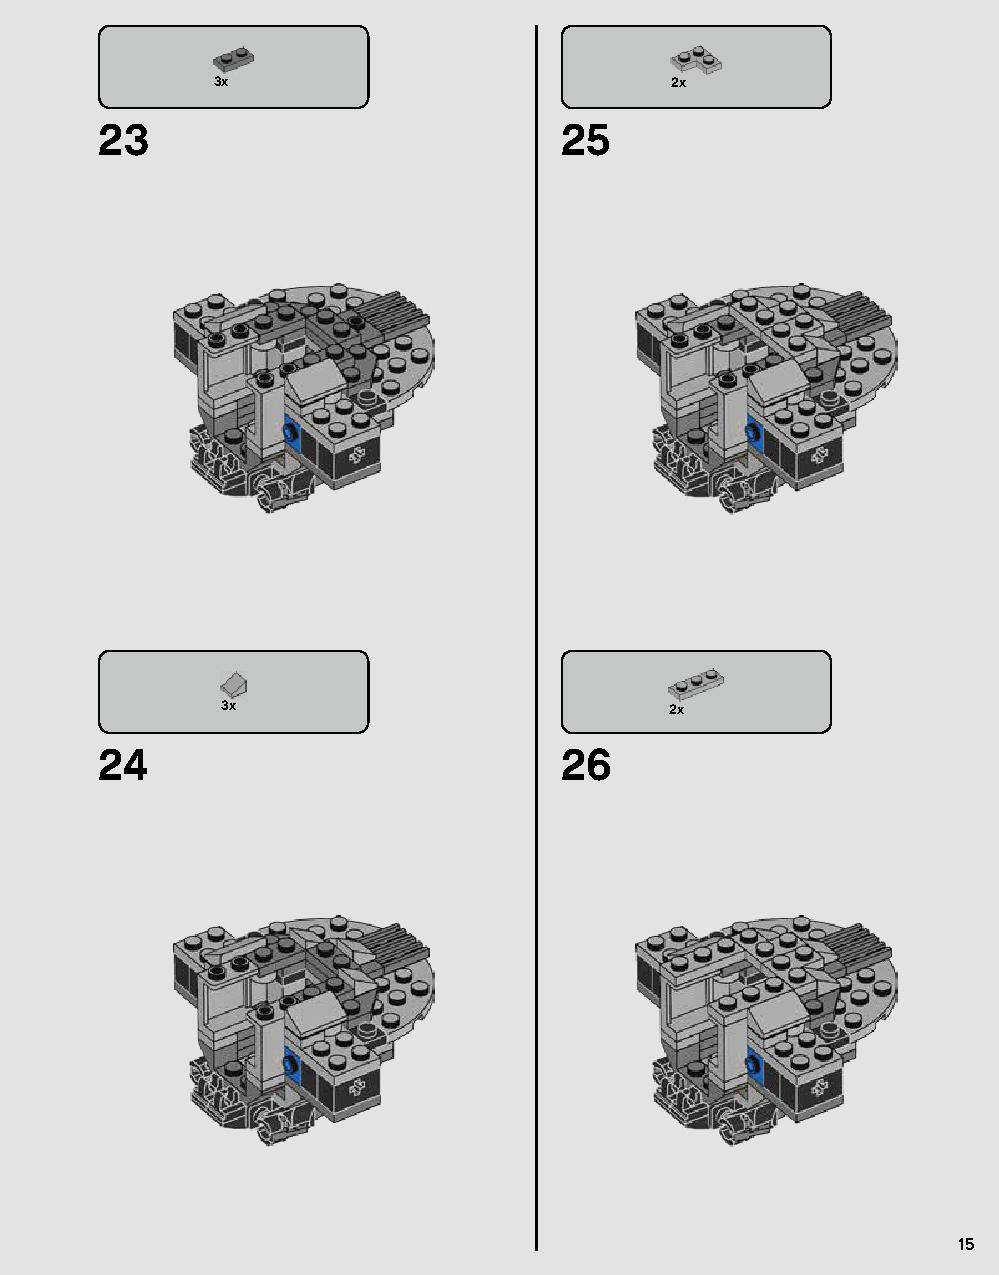 스타워즈 다스베이더 캐슬 75251 레고 세트 제품정보 레고 조립설명서 15 page